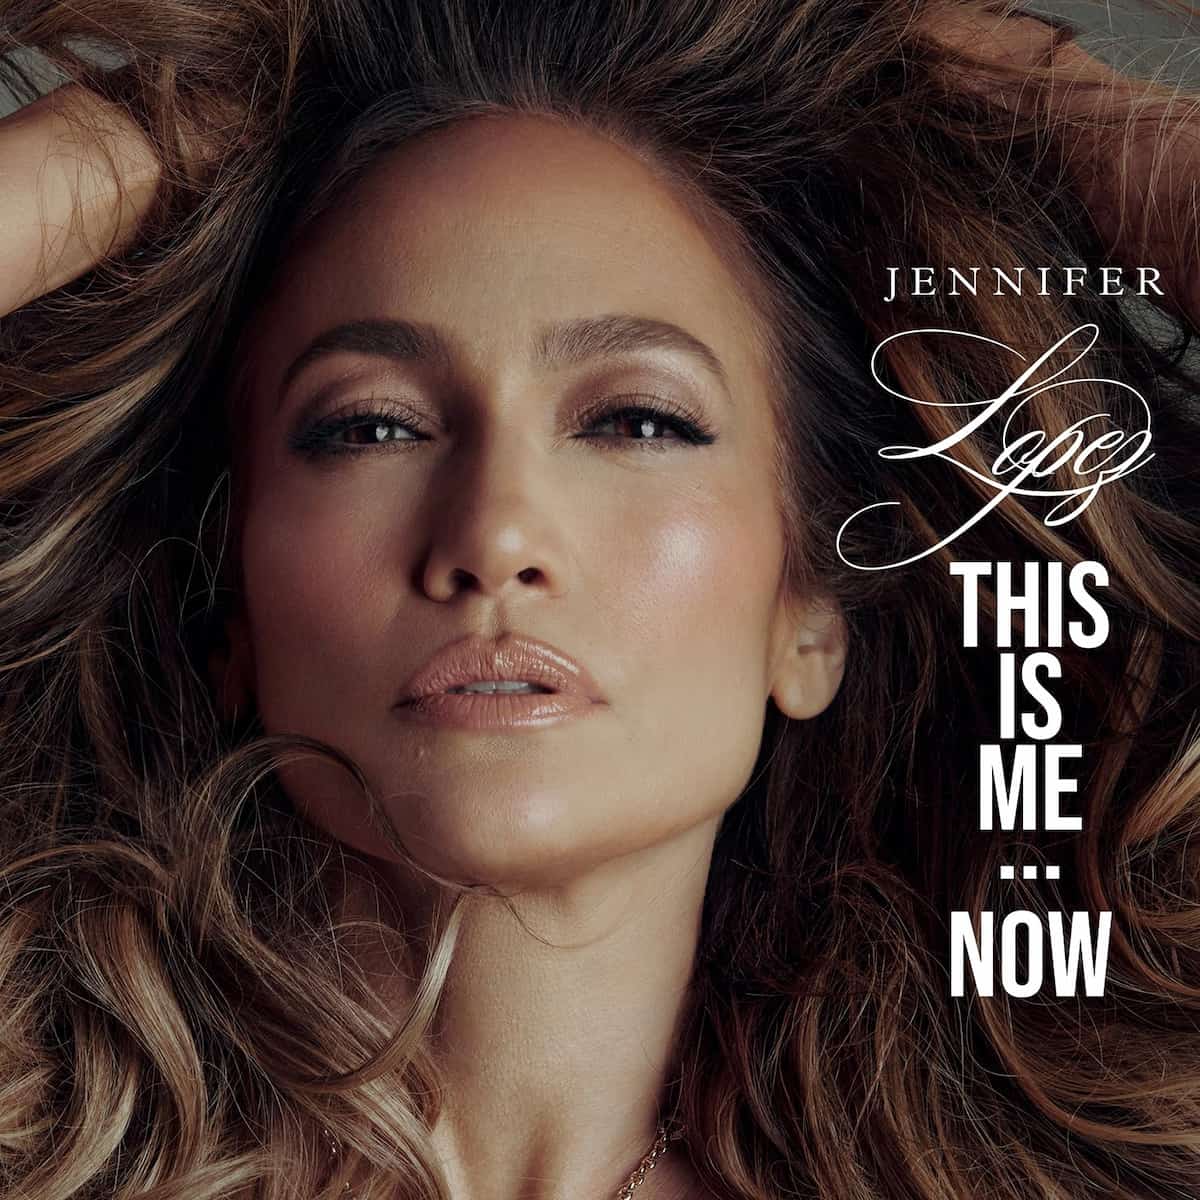 J Lo Jennifer Lopez veröffentlicht neues Album “This is Me... Now” - hier im Bild das Album-Cover